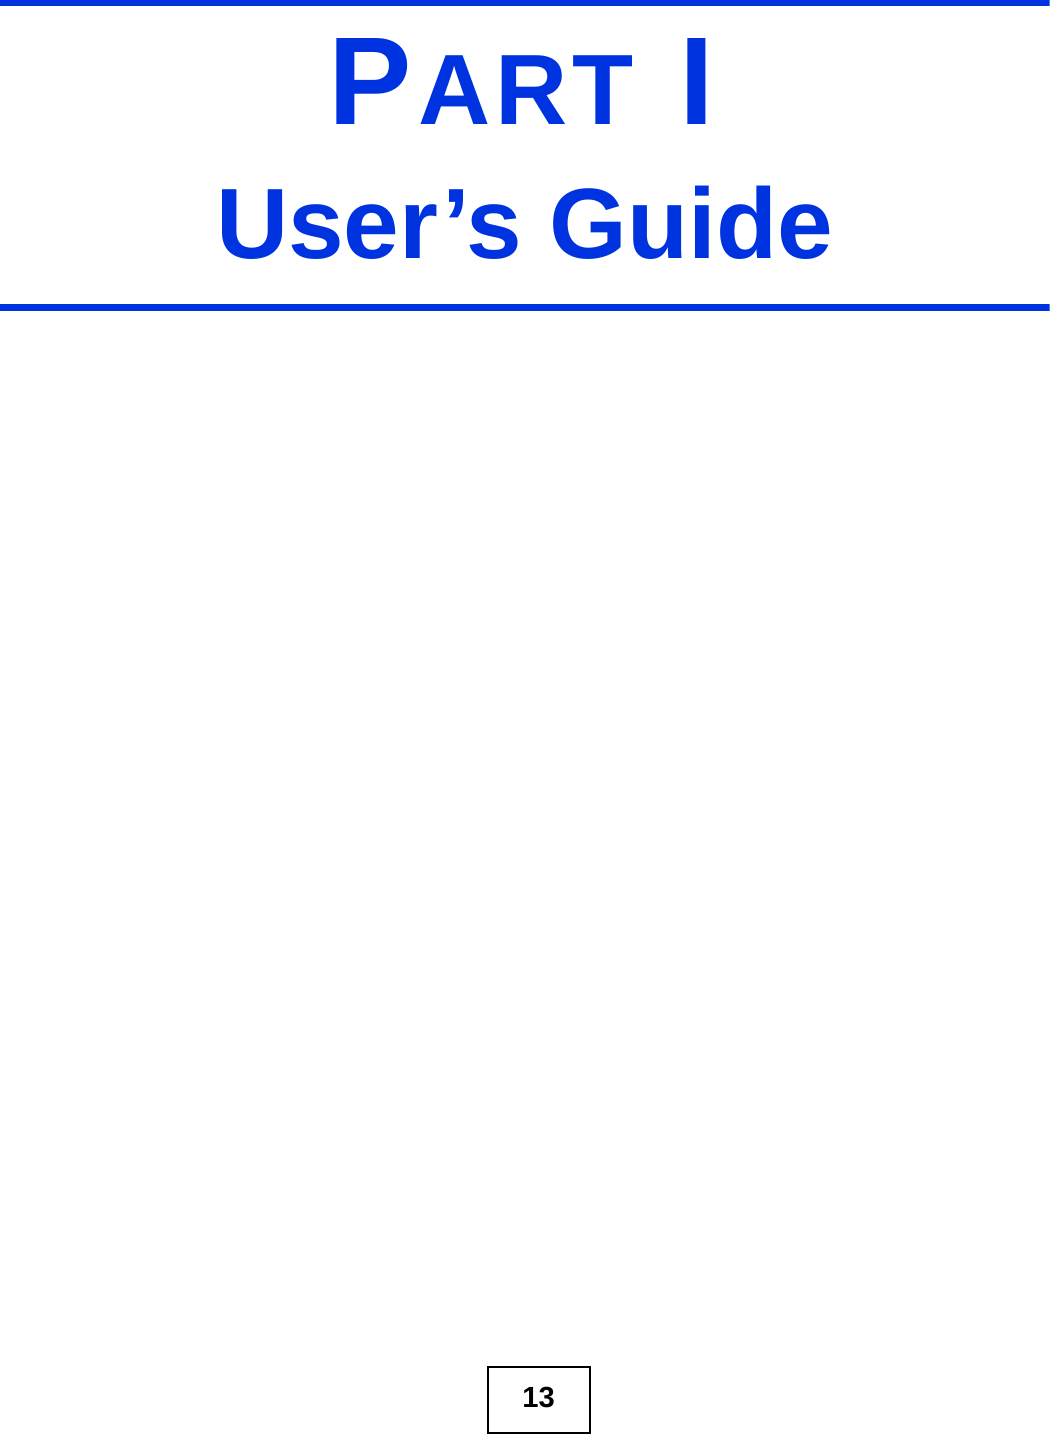 13PART IUser’s Guide 